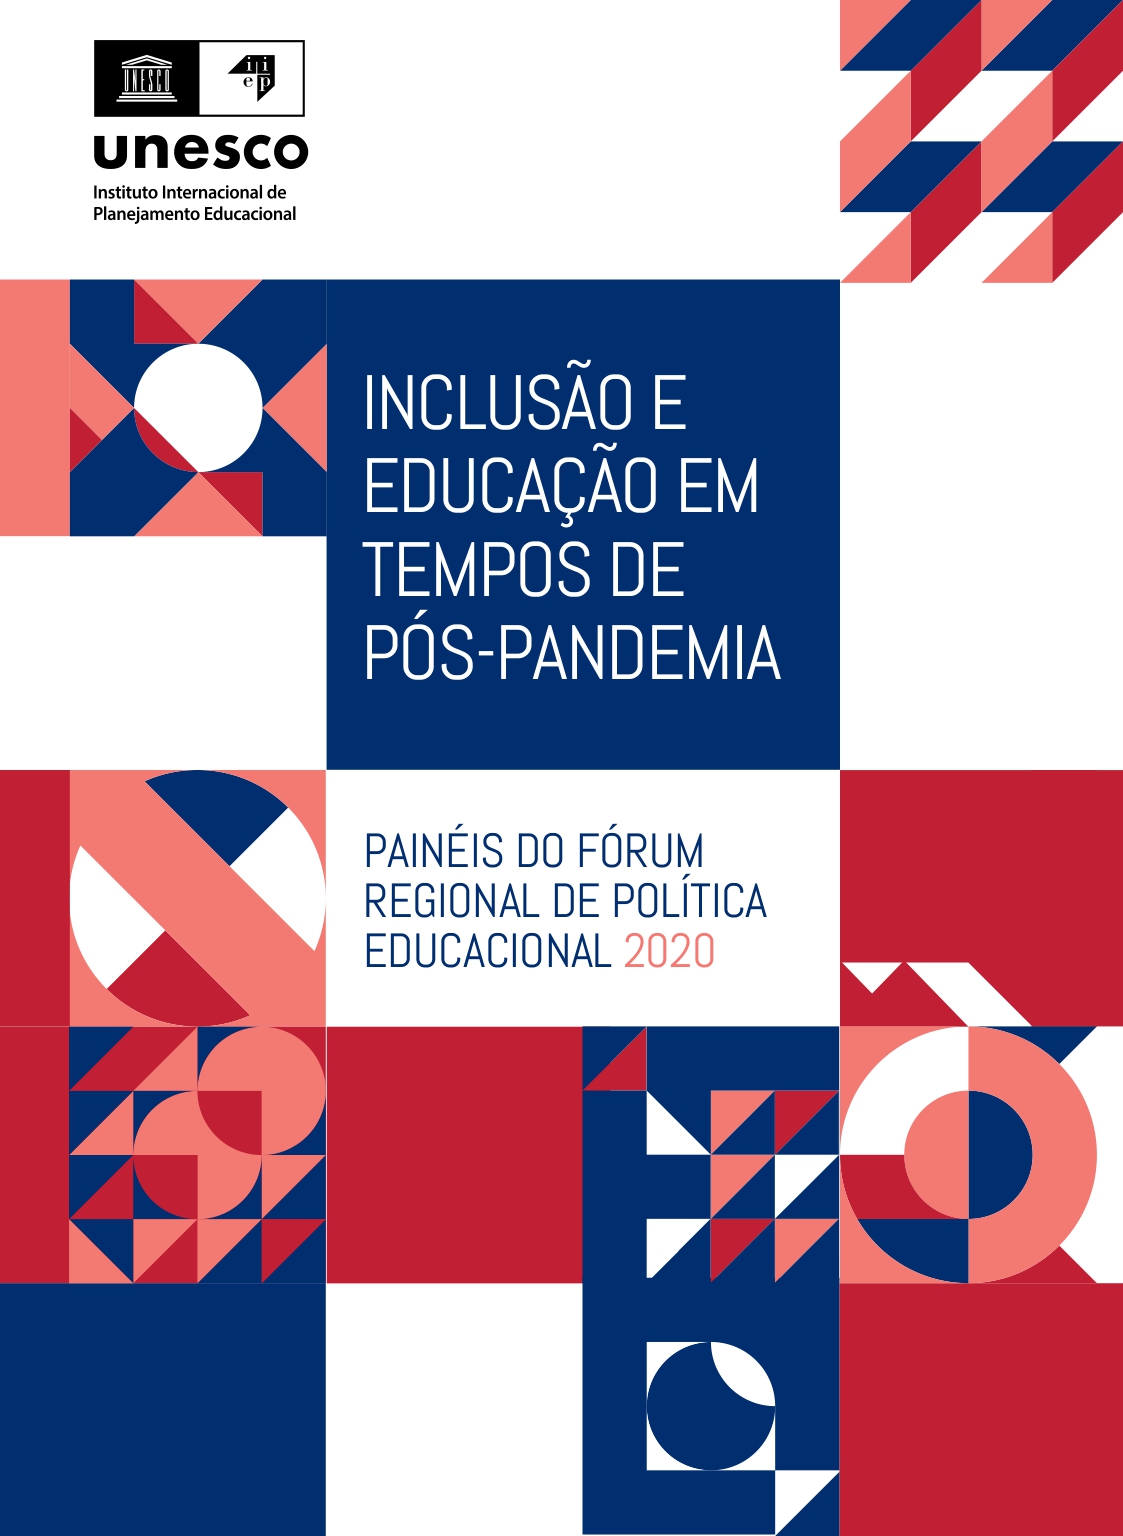 Capa da pesquisa nas cores azul, vermelha e branca contém na parte superior esquerda o logo da Unesco. Abaixo, título da pesquisa “Inclusão e educação em tempos de pós-pandemia: painéis do fórum regional de política educacional 2020”. Fim da descrição. 